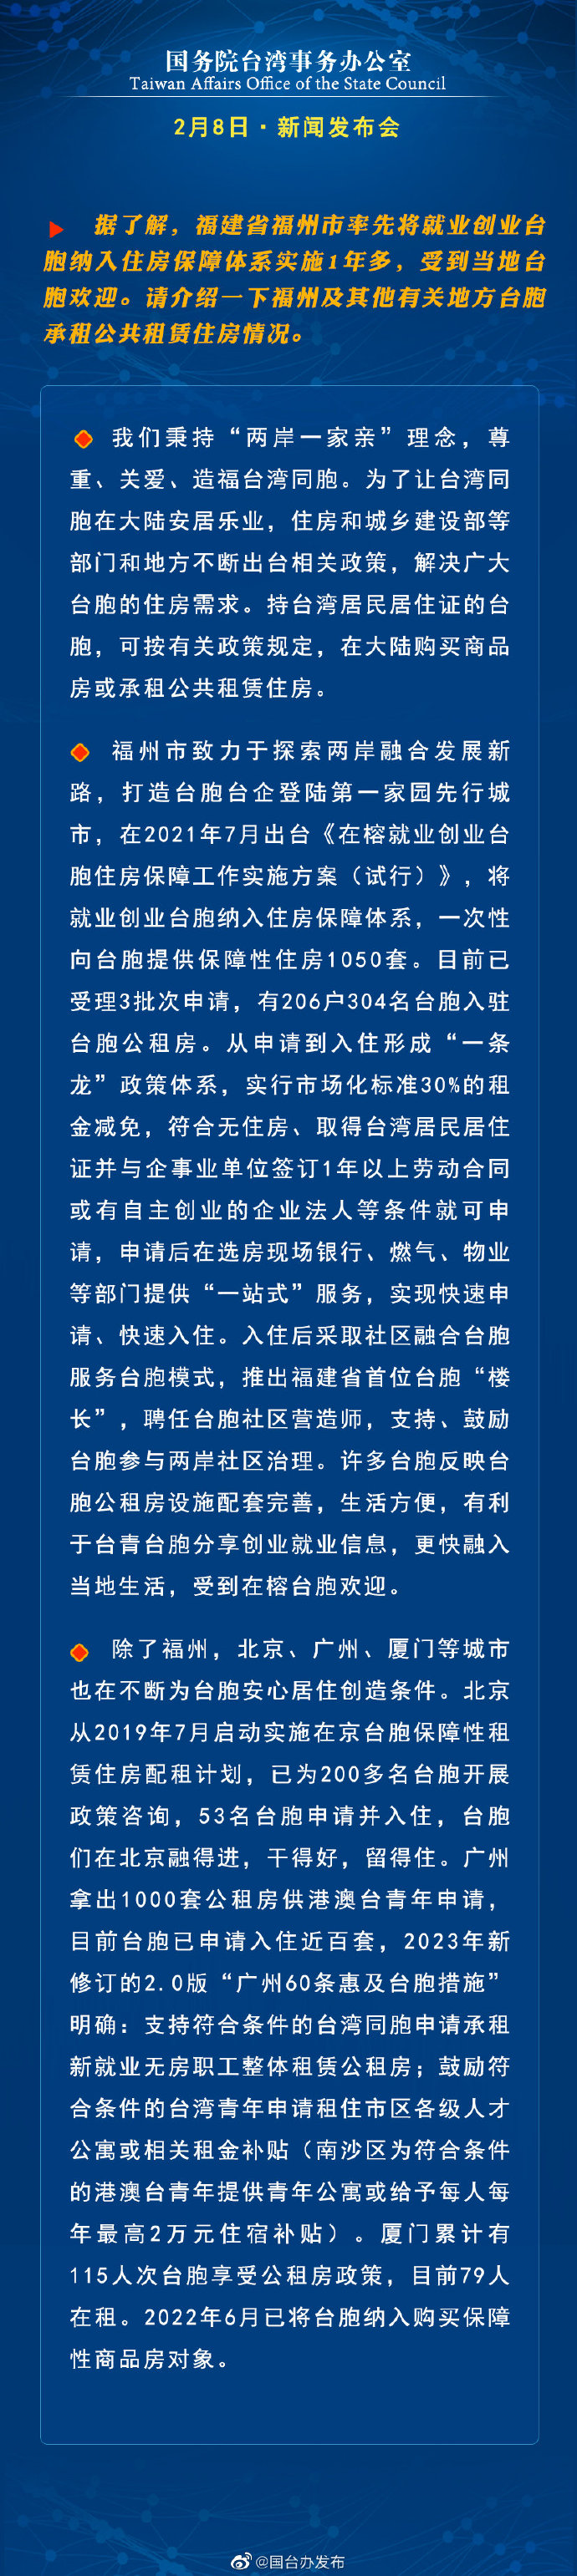 国务院台湾事务办公室2月8日·新闻发布会